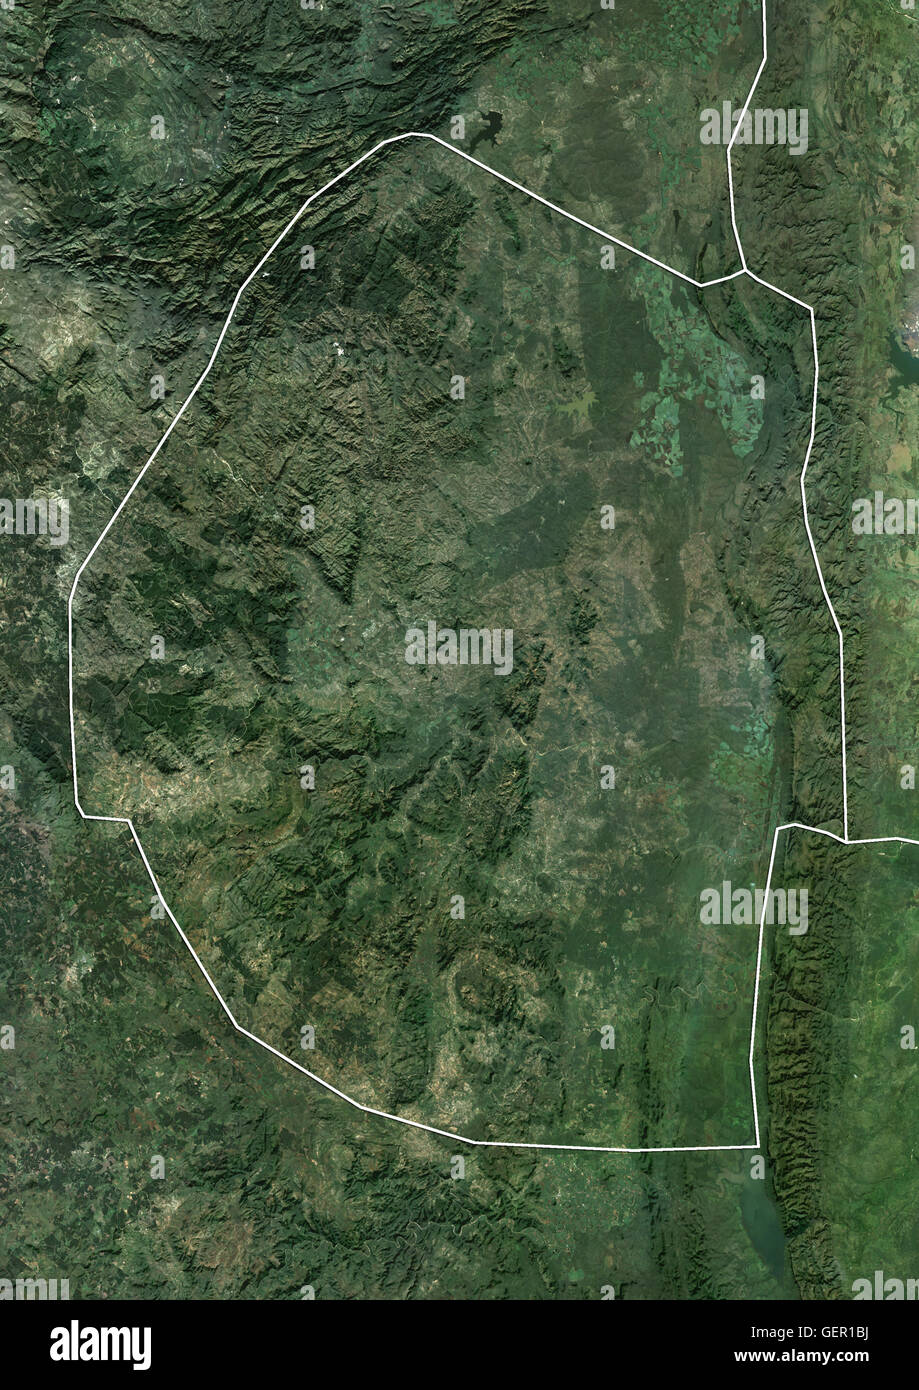 Satellitenansicht von Swasiland (mit Ländergrenzen). Dieses Bild wurde aus Daten von Landsat-Satelliten erworben erstellt. Stockfoto